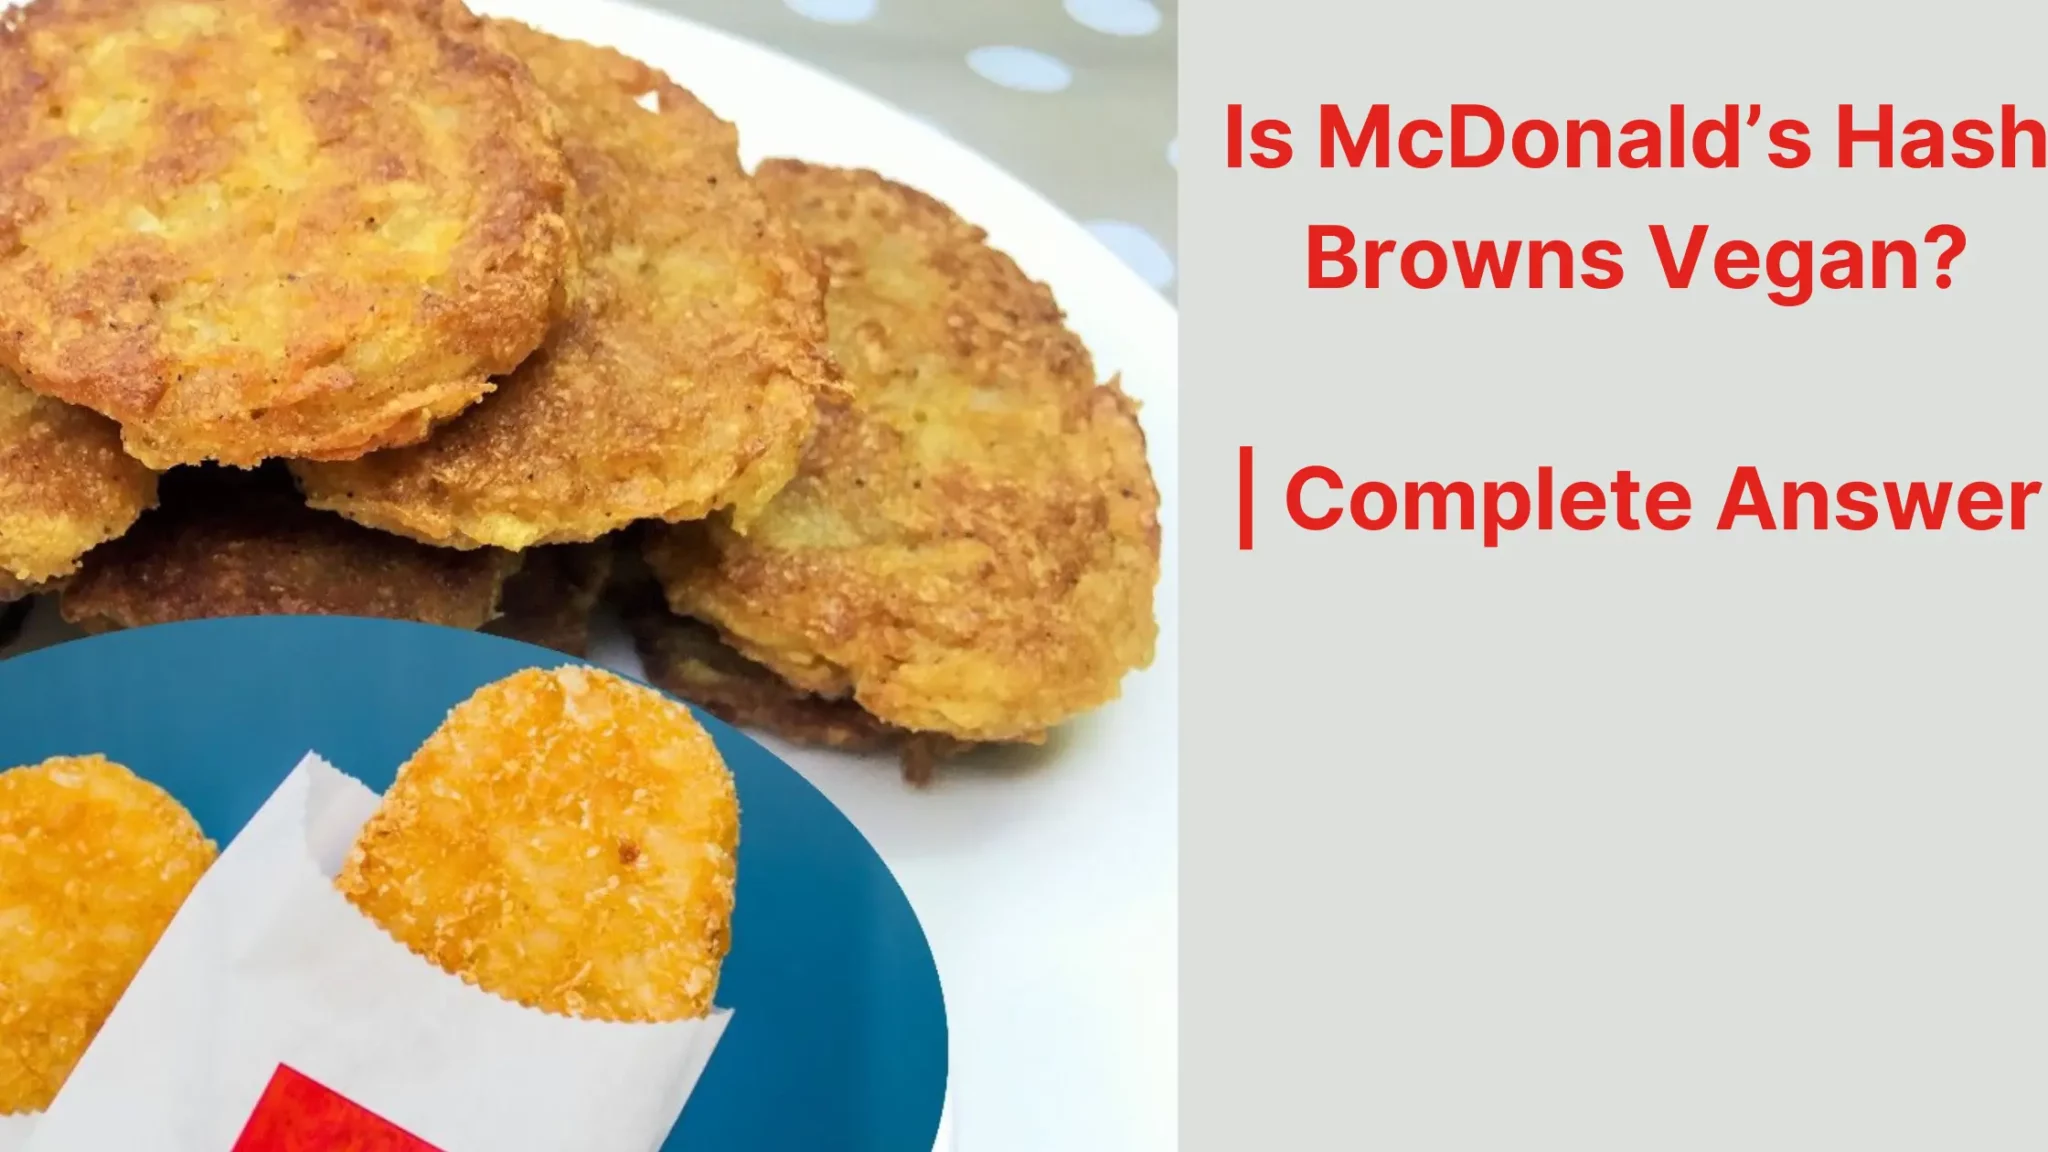 Is McDonald’s Hash Browns Vegan?